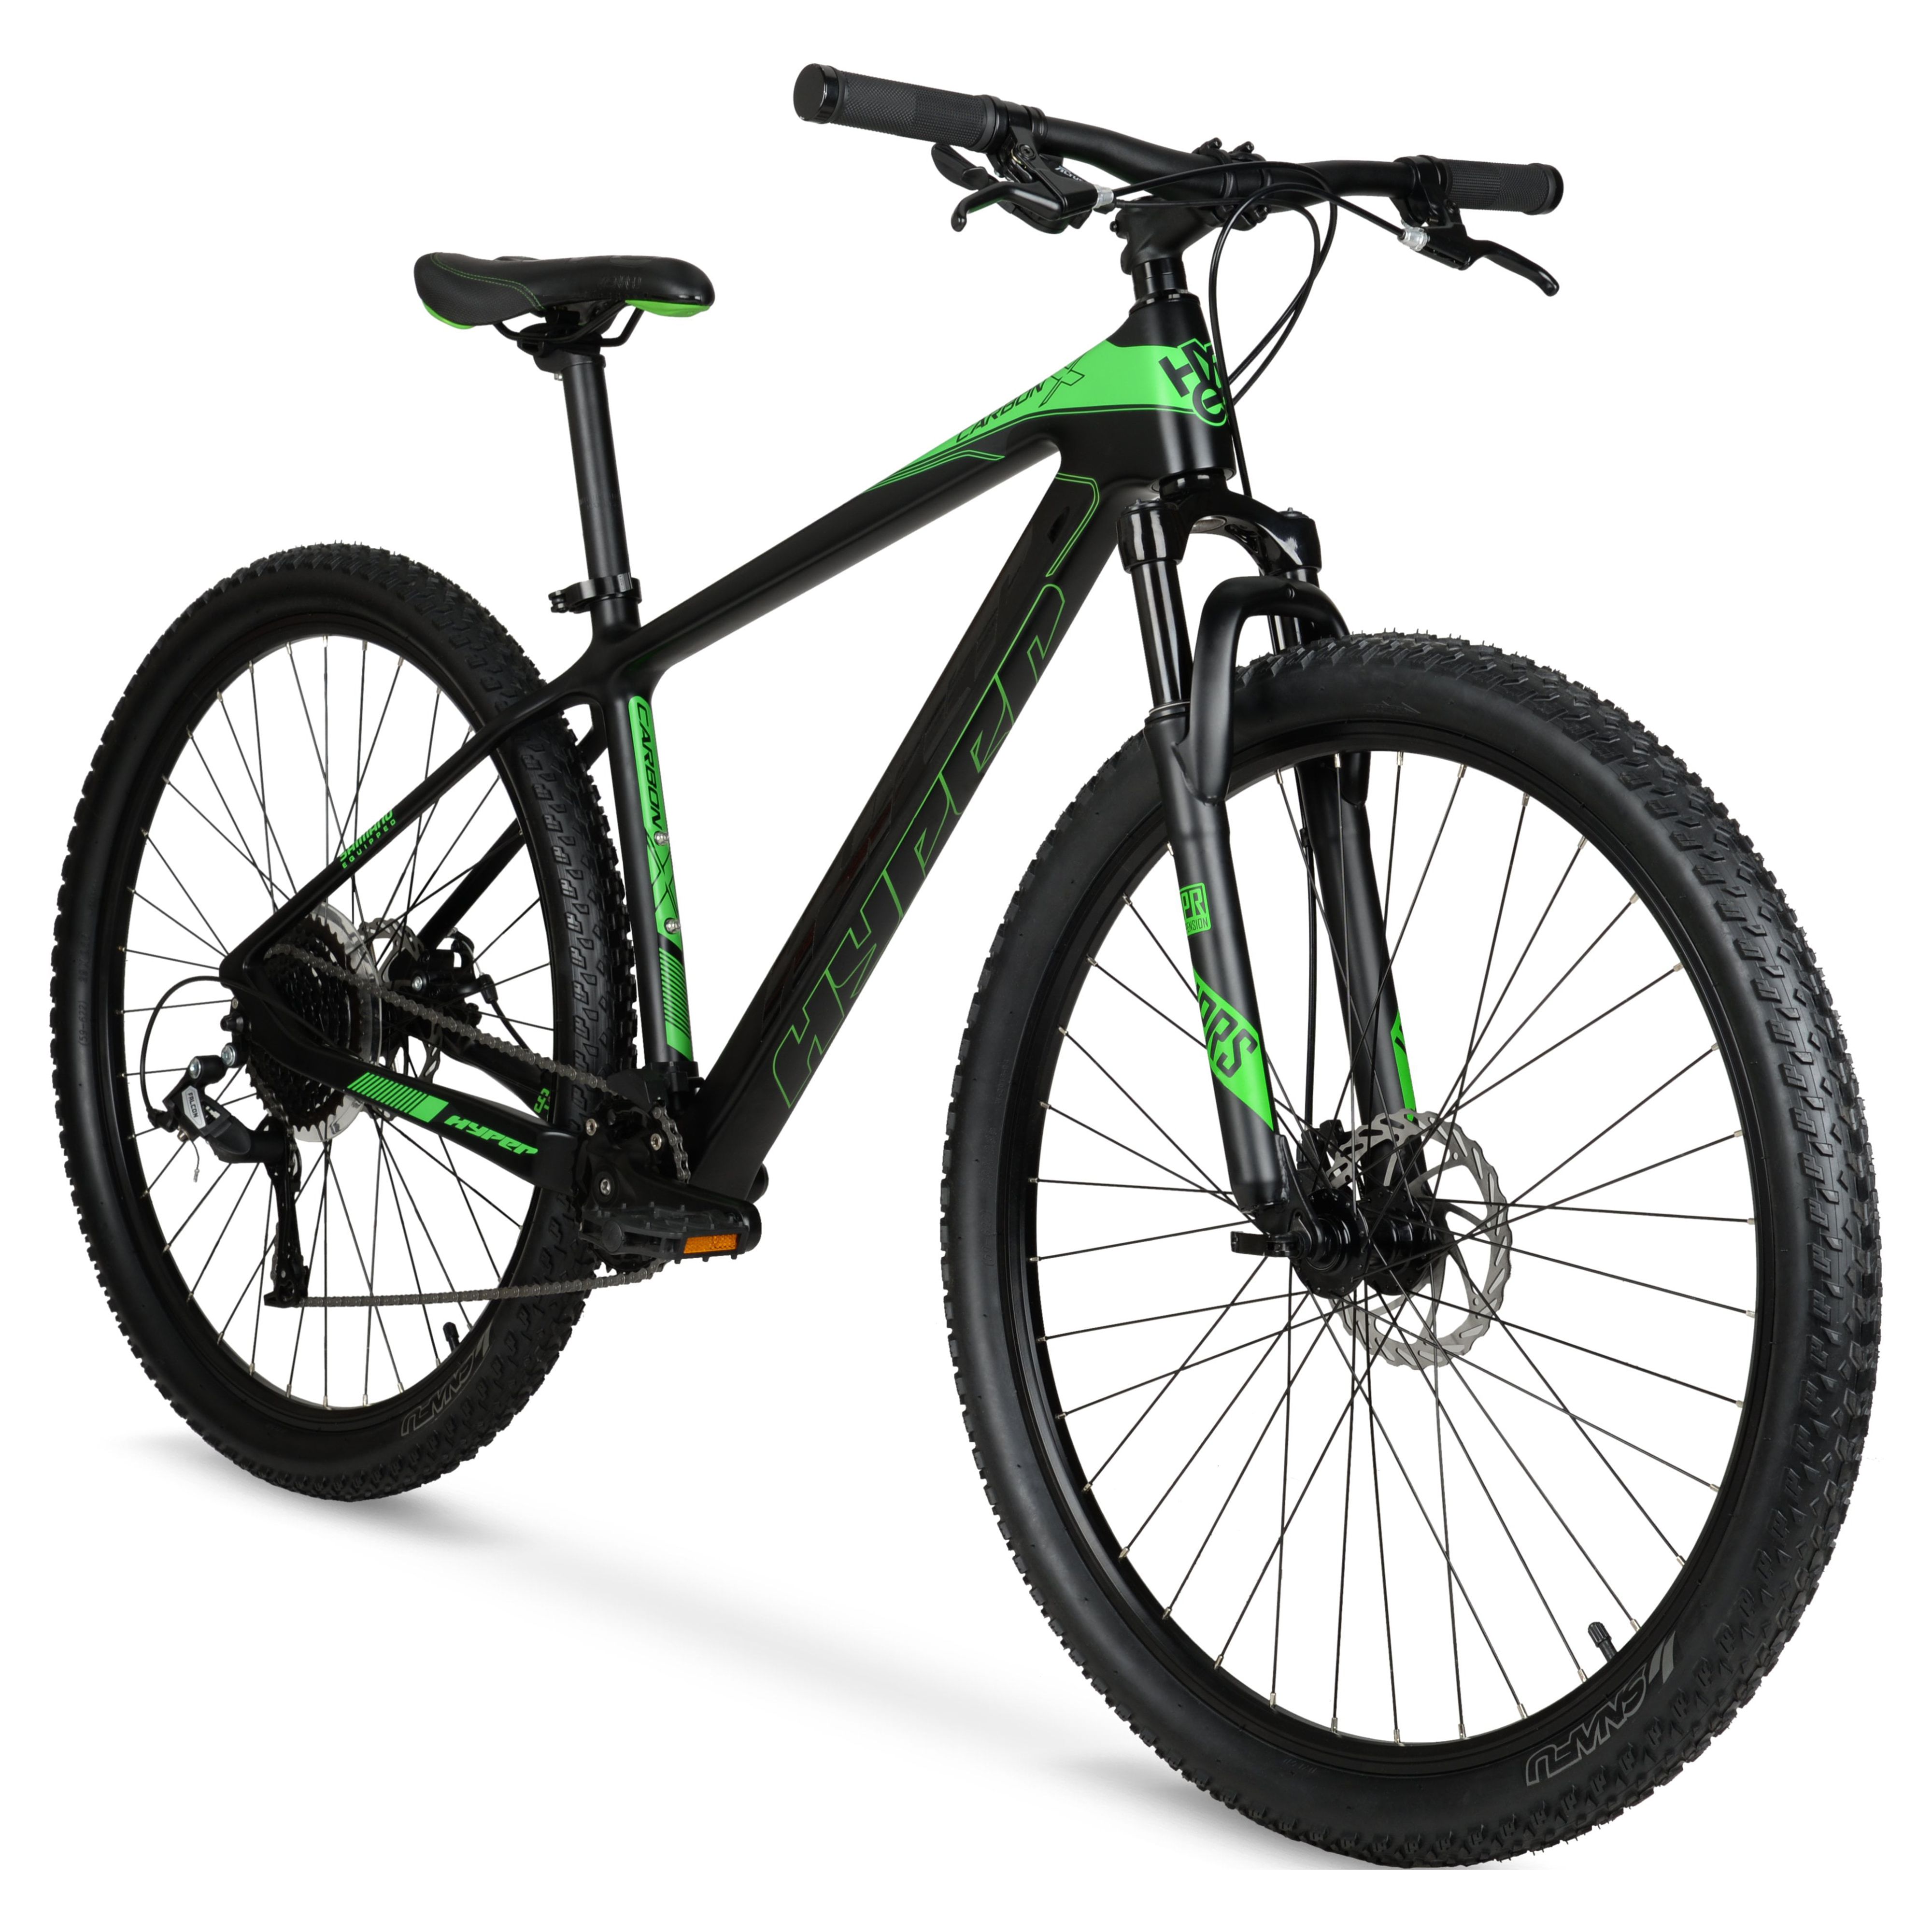 Hyper 29" Carbon Fiber Men's Mountain Bike, Black/Green - image 6 of 12